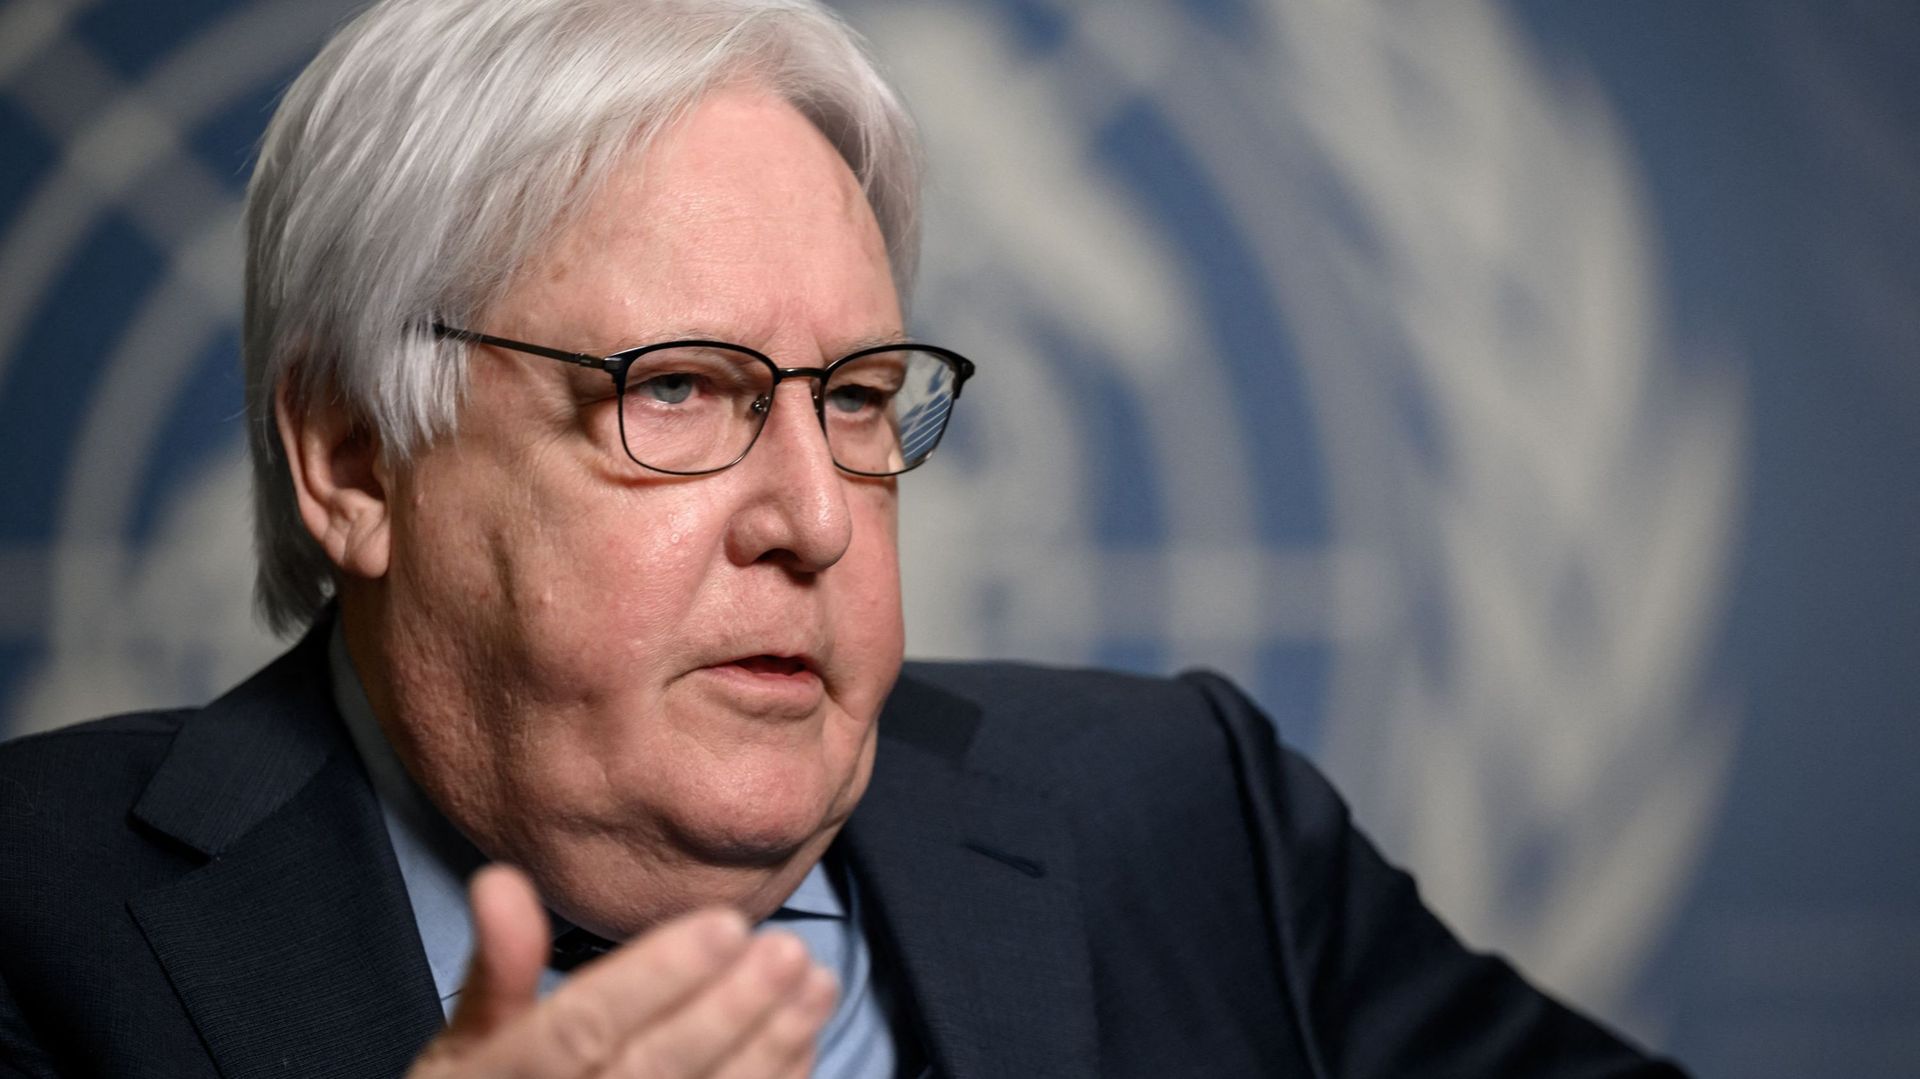 L'ONU a "besoin de couloirs sûrs pour fournir de l'aide humanitaire dans les zones d'hostilités" en Ukraine, a déclaré lundi au Conseil de sécurité le secrétaire général adjoint des Nations unies pour les Affaires humanitaires, Martin Griffiths.